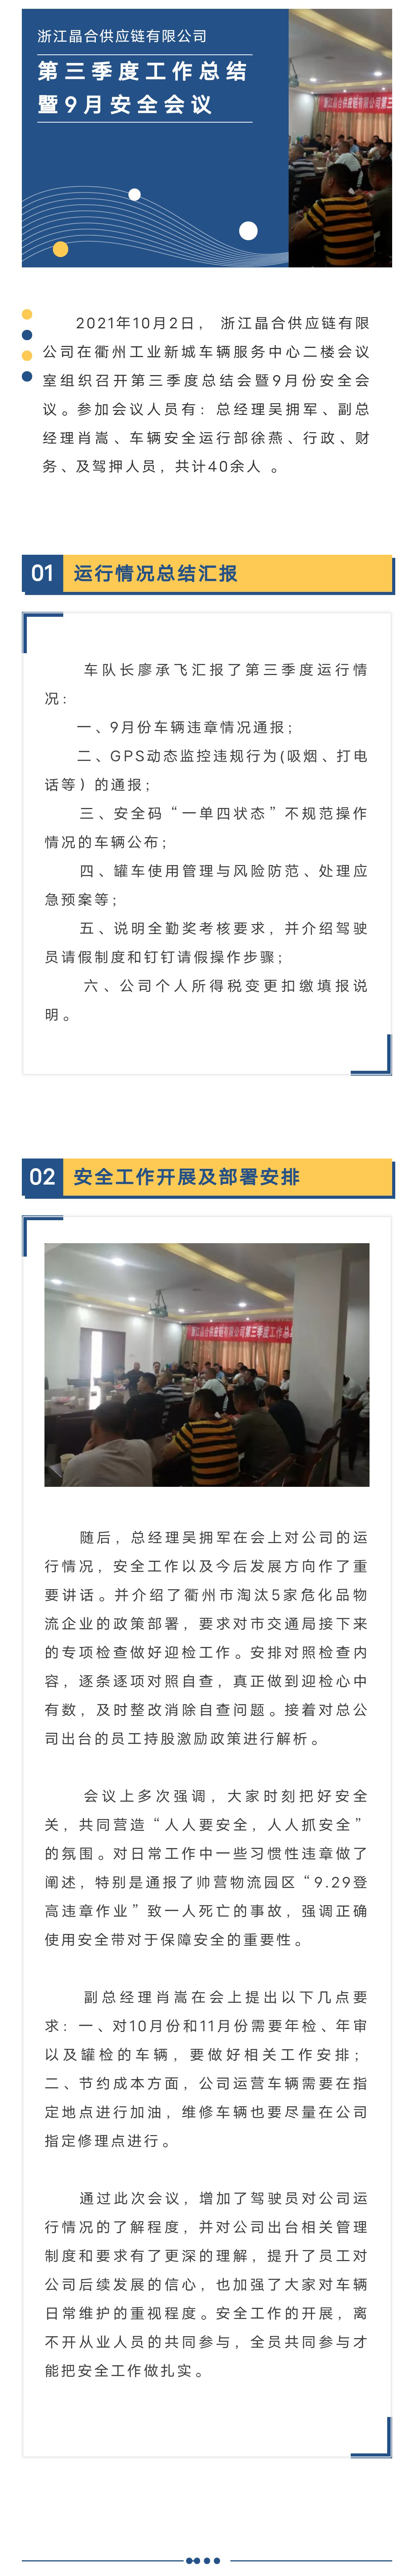 浙江晶合供应链有限公司召开第三季度经营总结会暨9月份安全会议